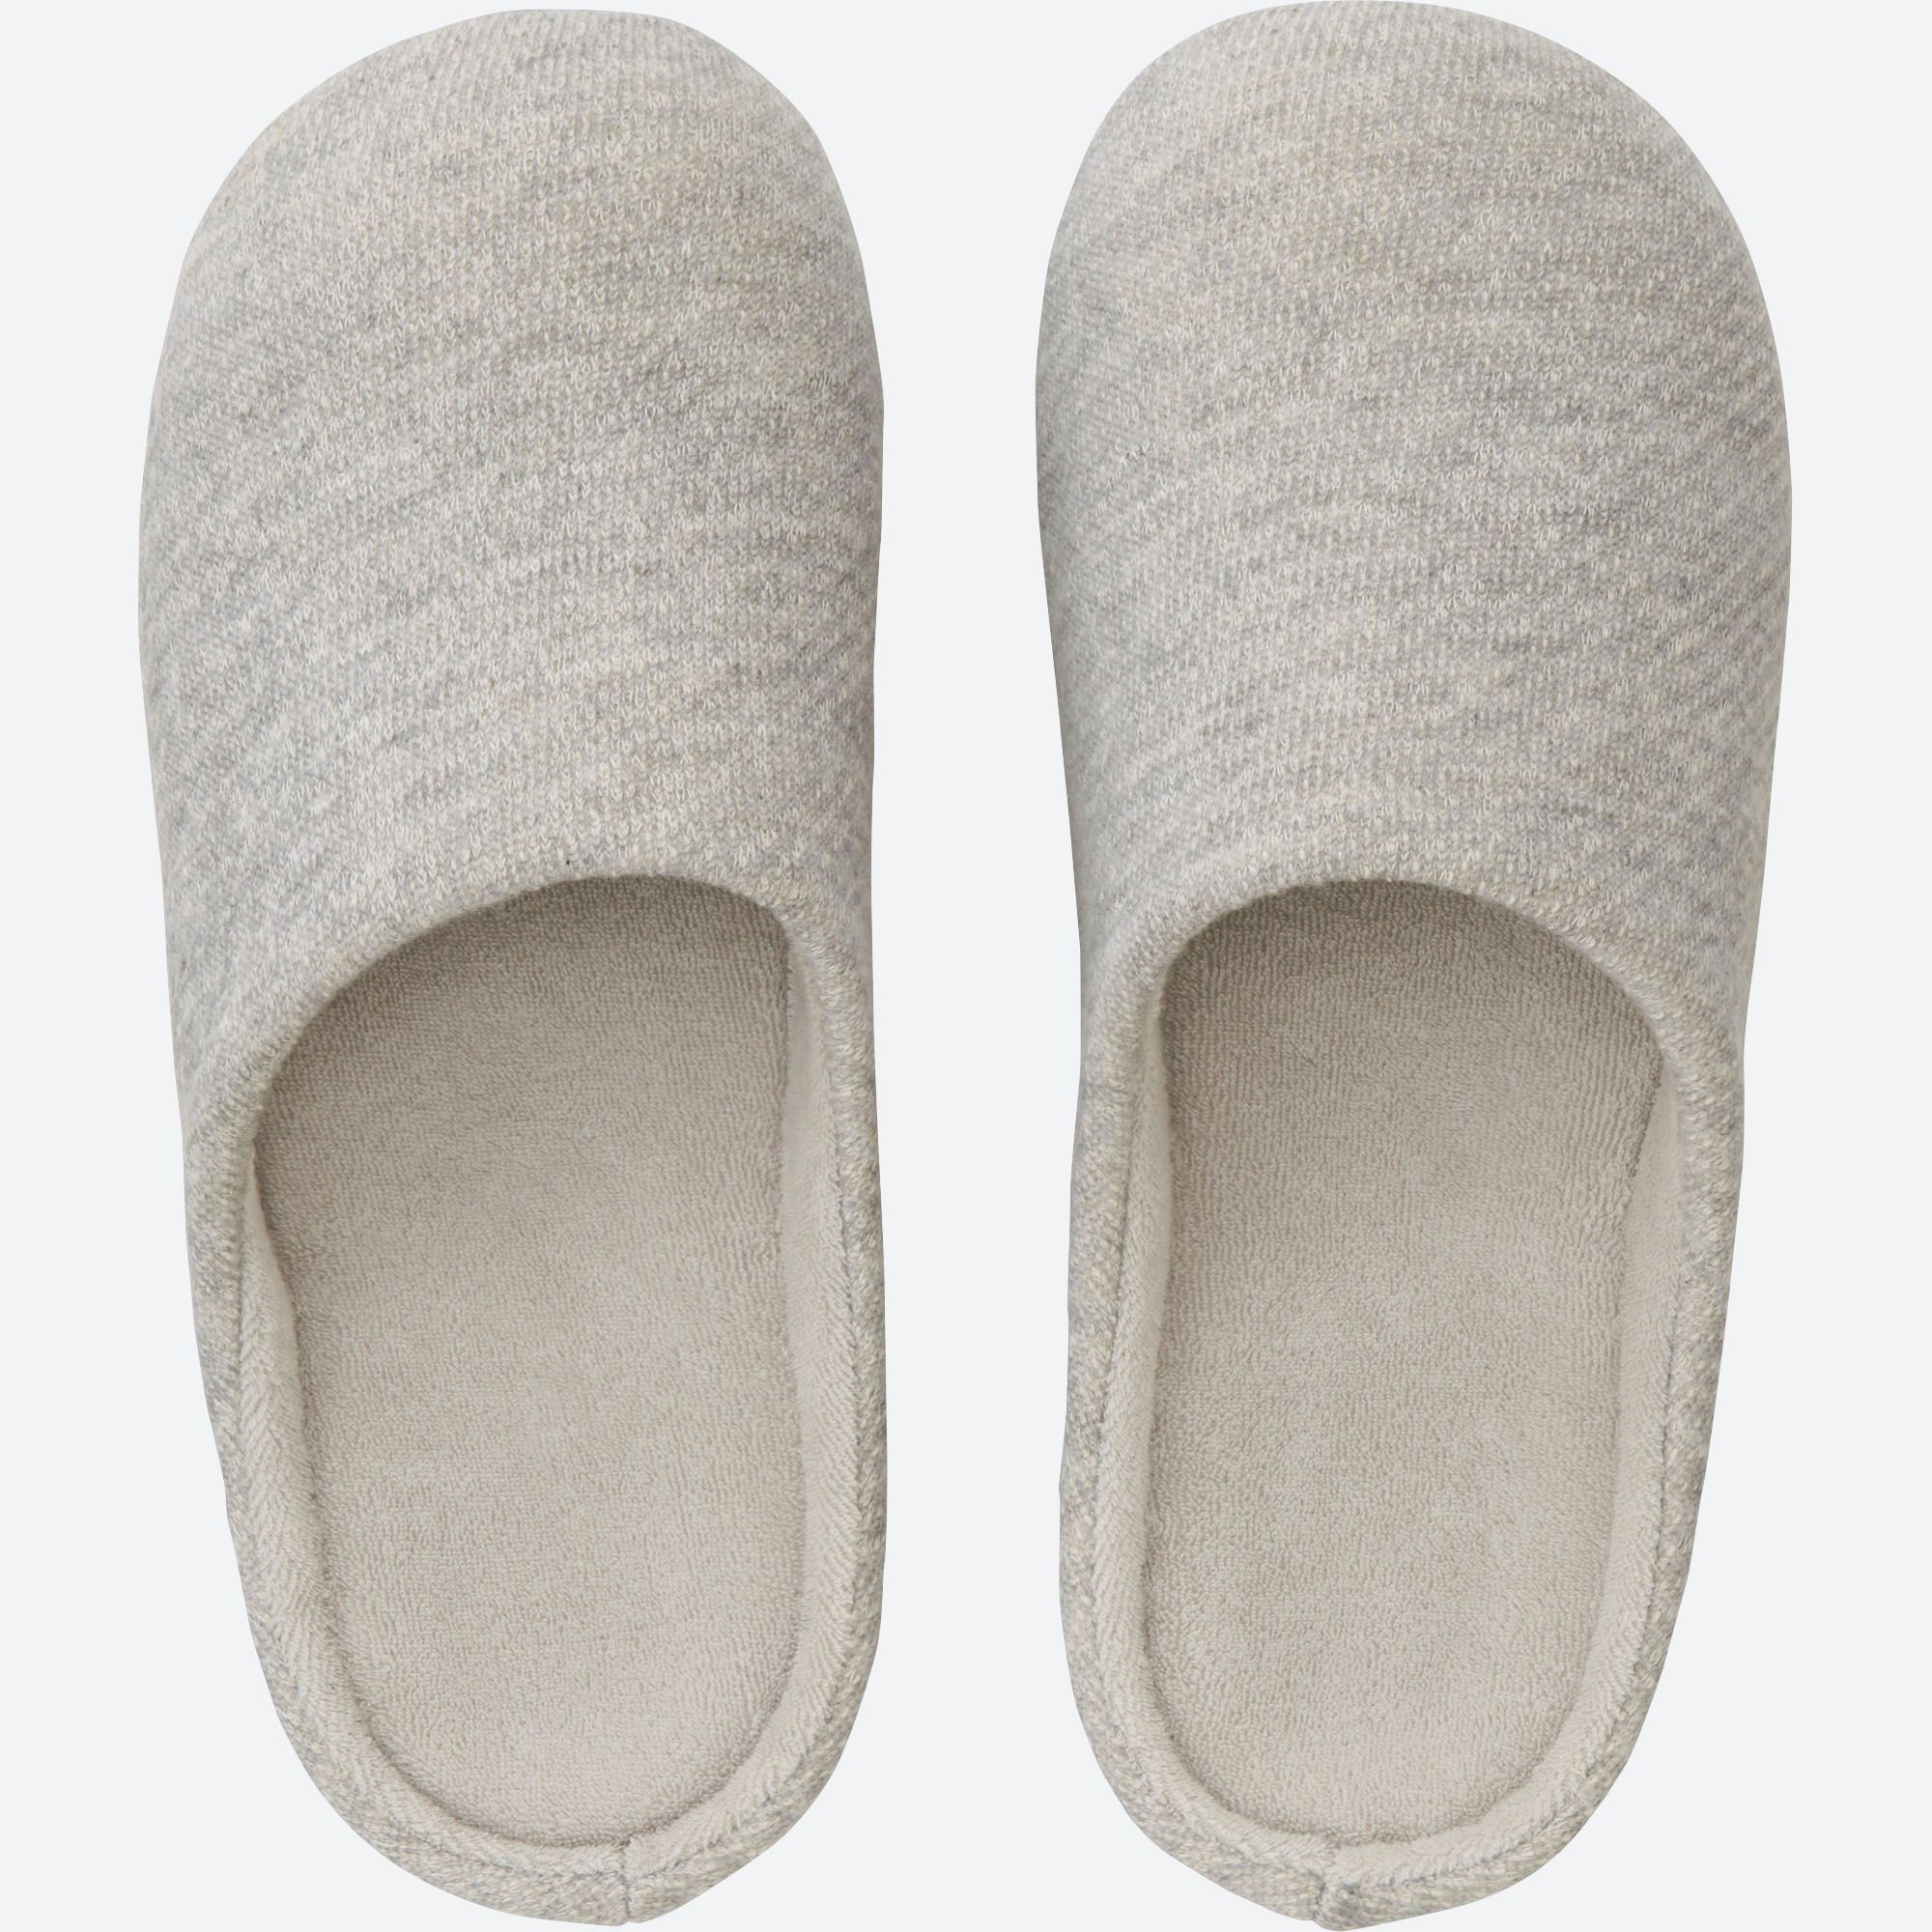 Bedroom Slippers Uniqlo Online Shopping For Women Men Kids